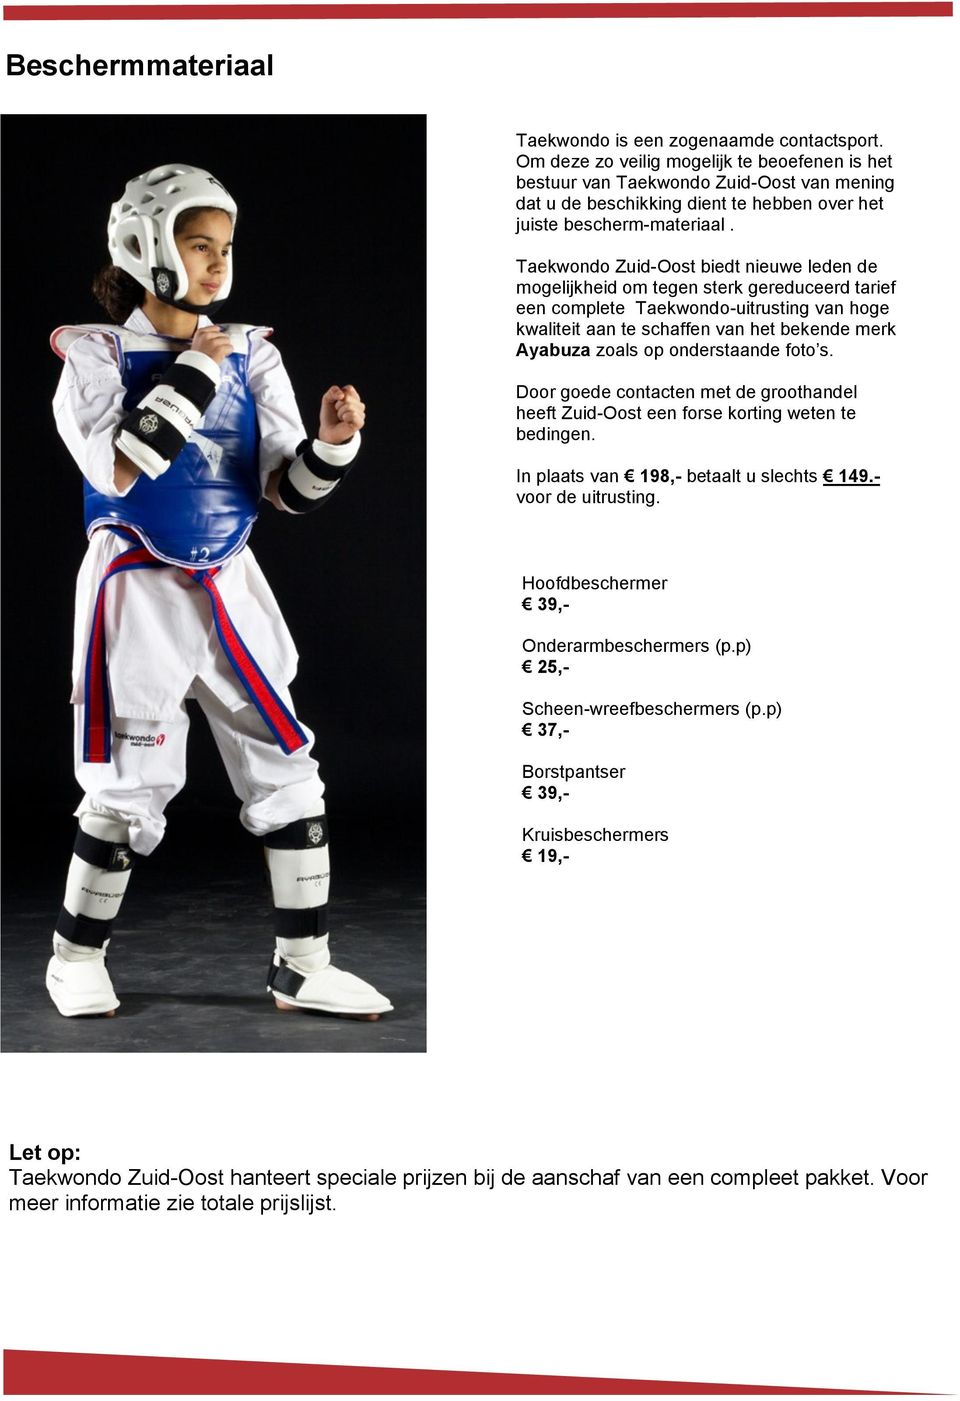 Taekwondo Zuid-Oost biedt nieuwe leden de mogelijkheid om tegen sterk gereduceerd tarief een complete Taekwondo-uitrusting van hoge kwaliteit aan te schaffen van het bekende merk Ayabuza zoals op